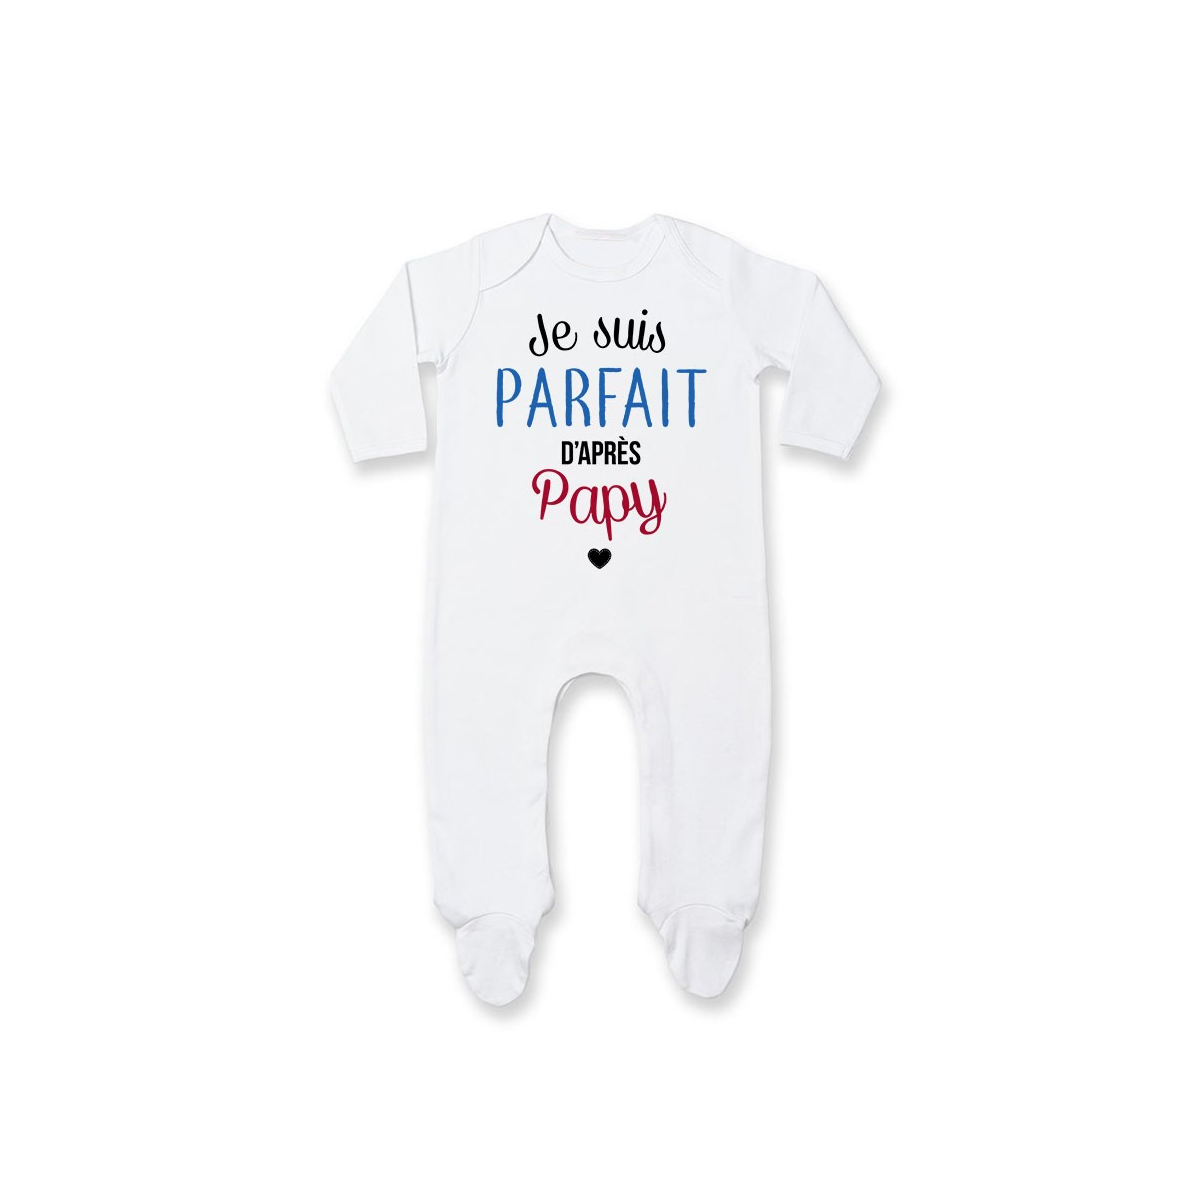 Pyjama bébé Je suis parfait d'après papy